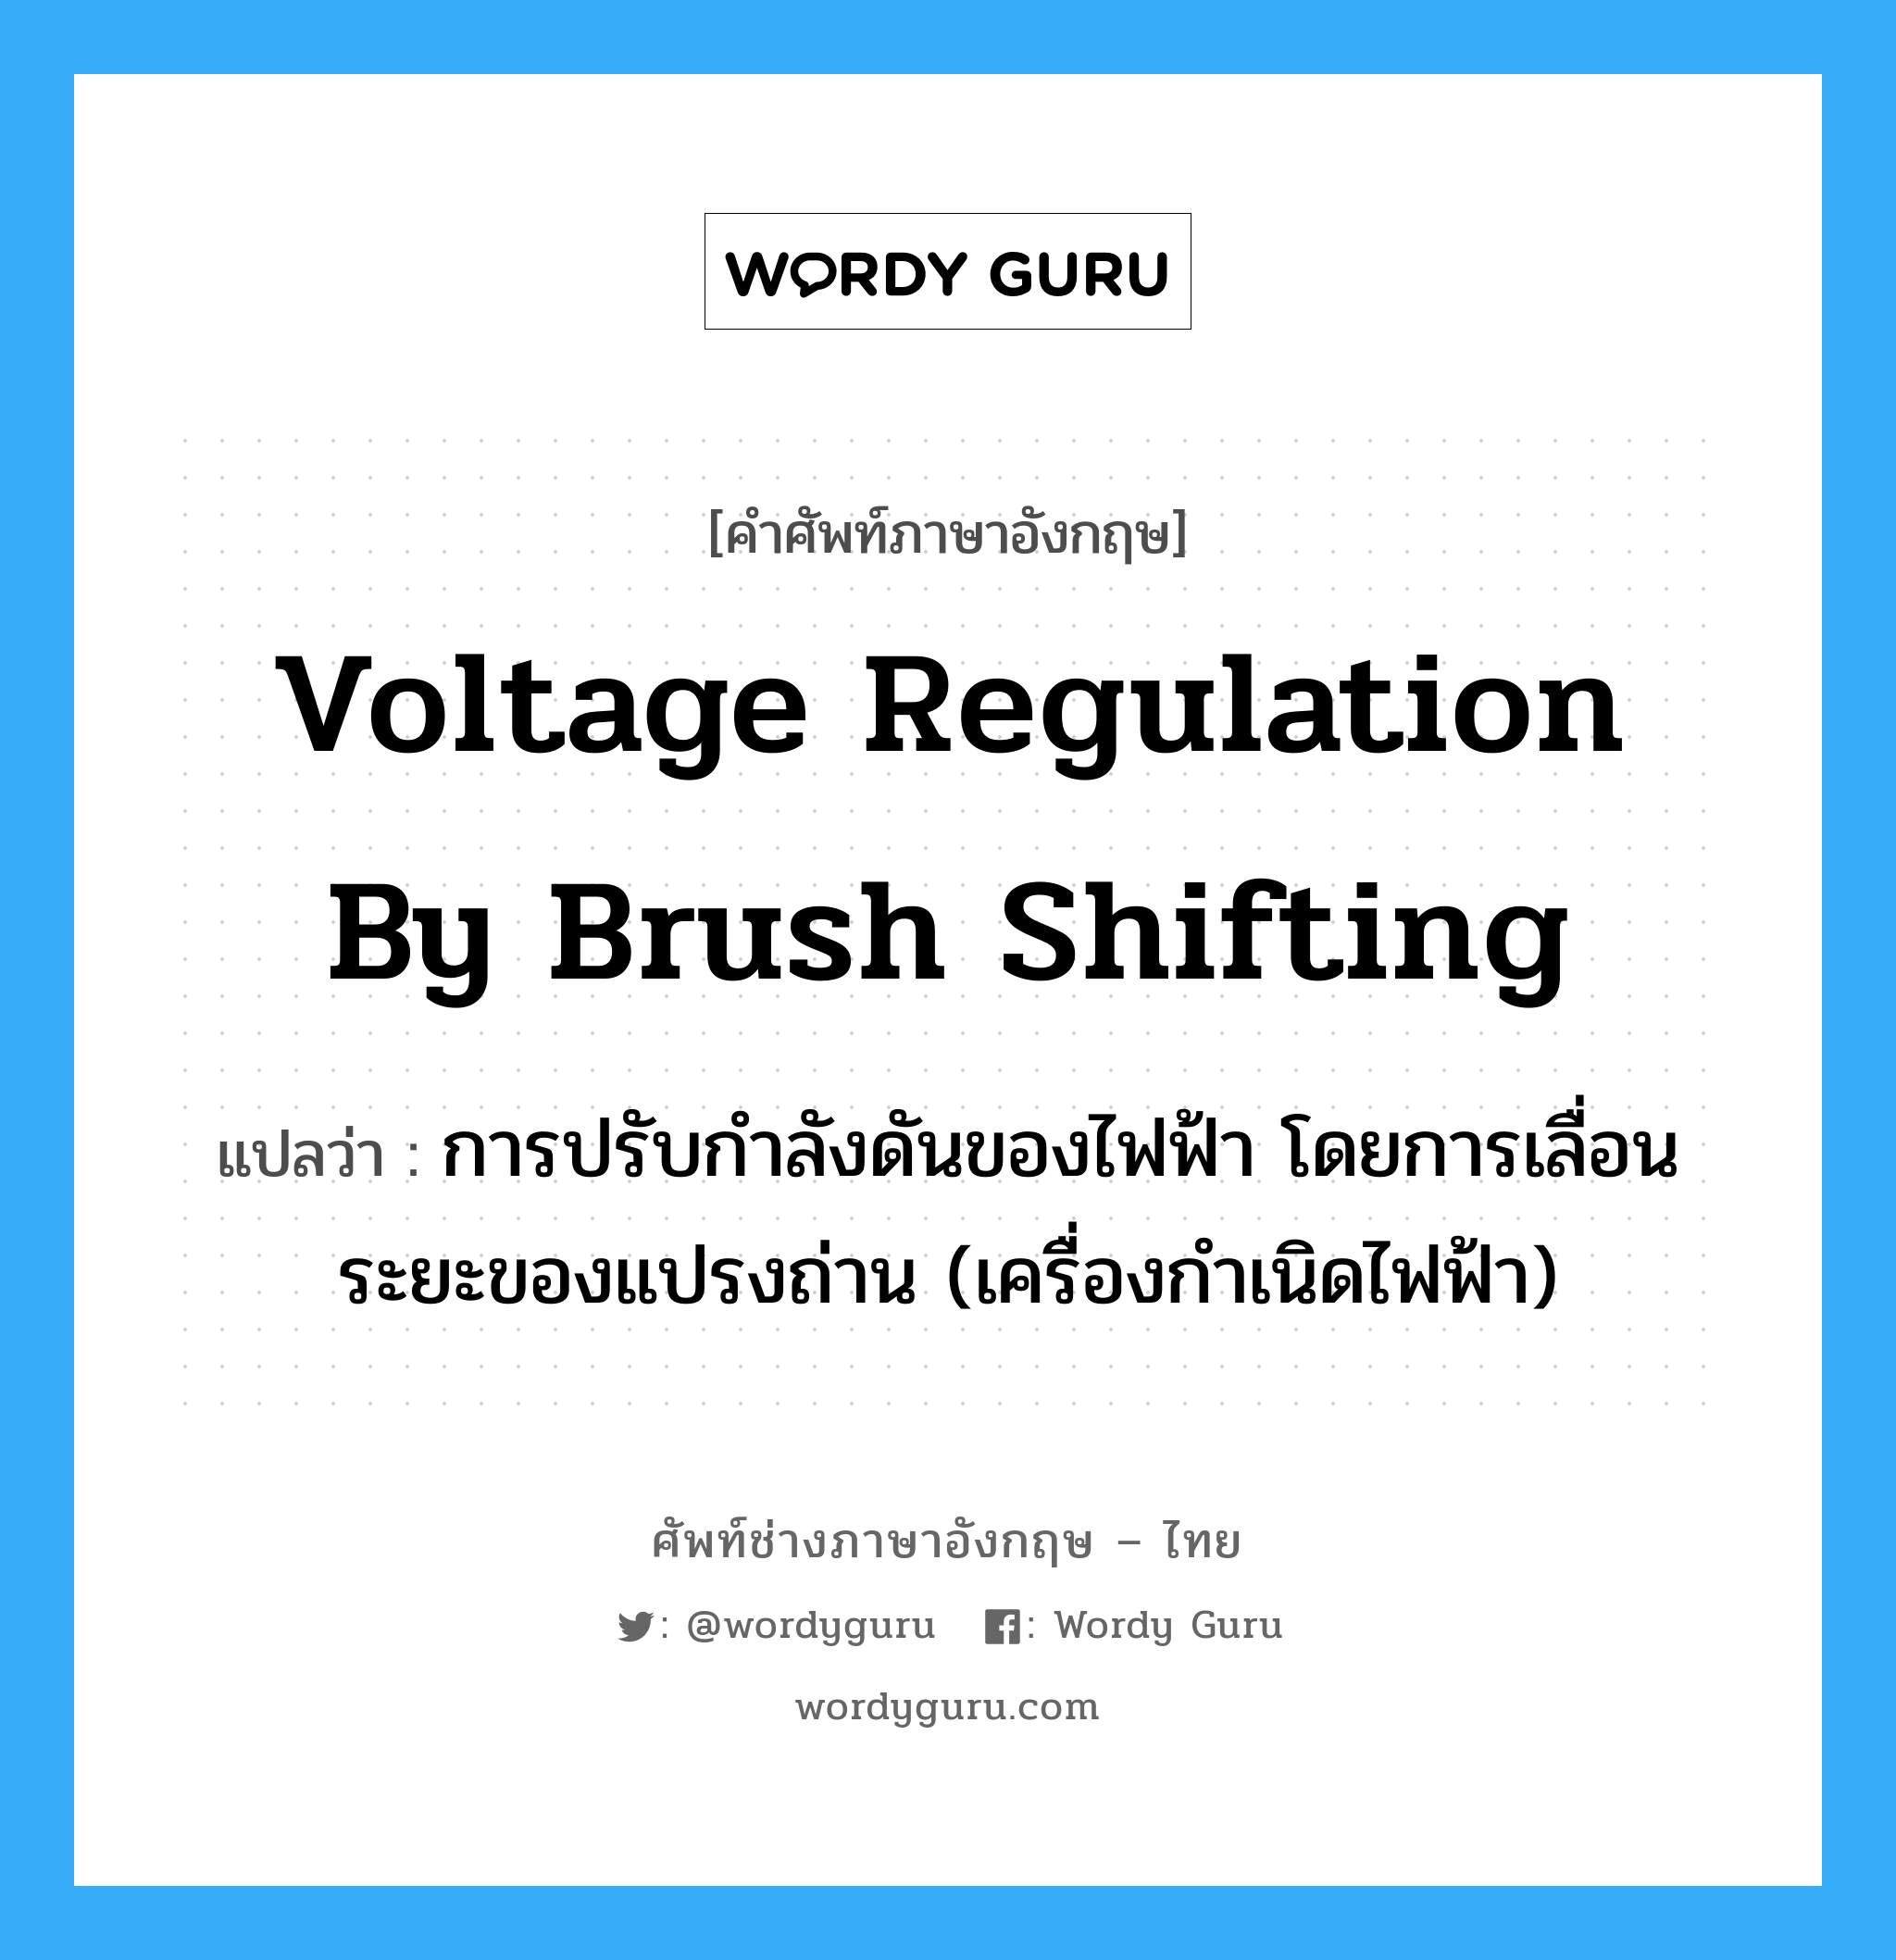 voltage regulation by brush shifting แปลว่า?, คำศัพท์ช่างภาษาอังกฤษ - ไทย voltage regulation by brush shifting คำศัพท์ภาษาอังกฤษ voltage regulation by brush shifting แปลว่า การปรับกำลังดันของไฟฟ้า โดยการเลื่อนระยะของแปรงถ่าน (เครื่องกำเนิดไฟฟ้า)